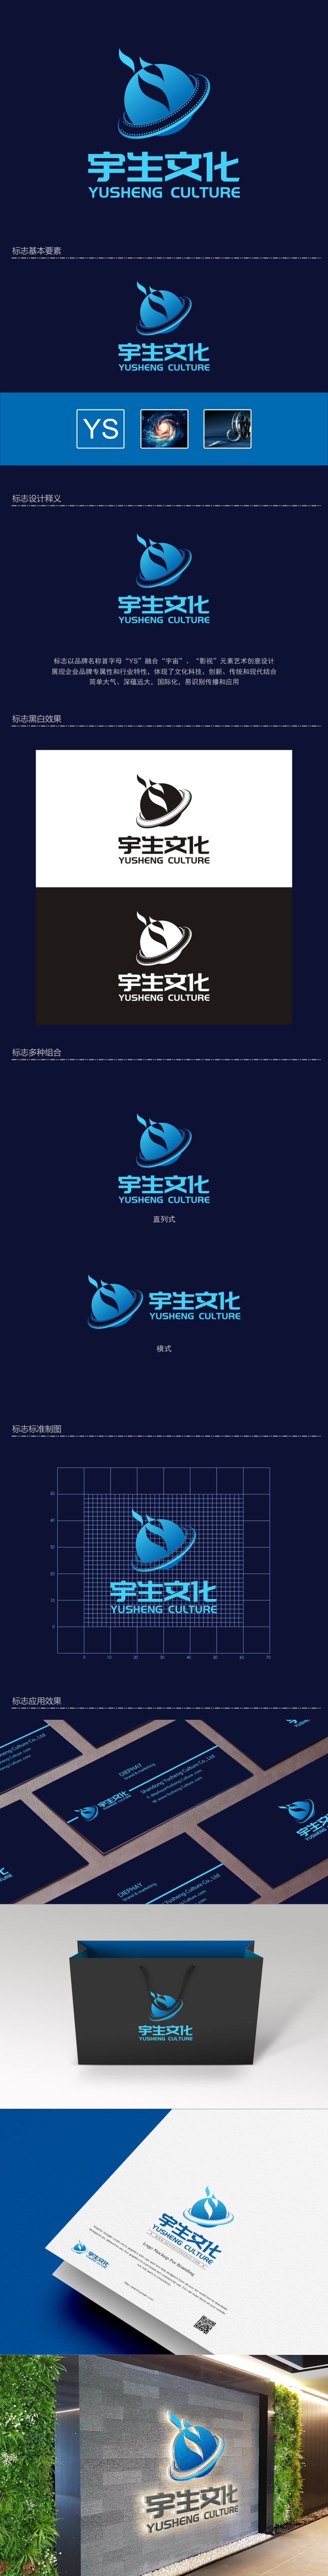 陈国伟的山东宇生文化股份有限公司logo设计